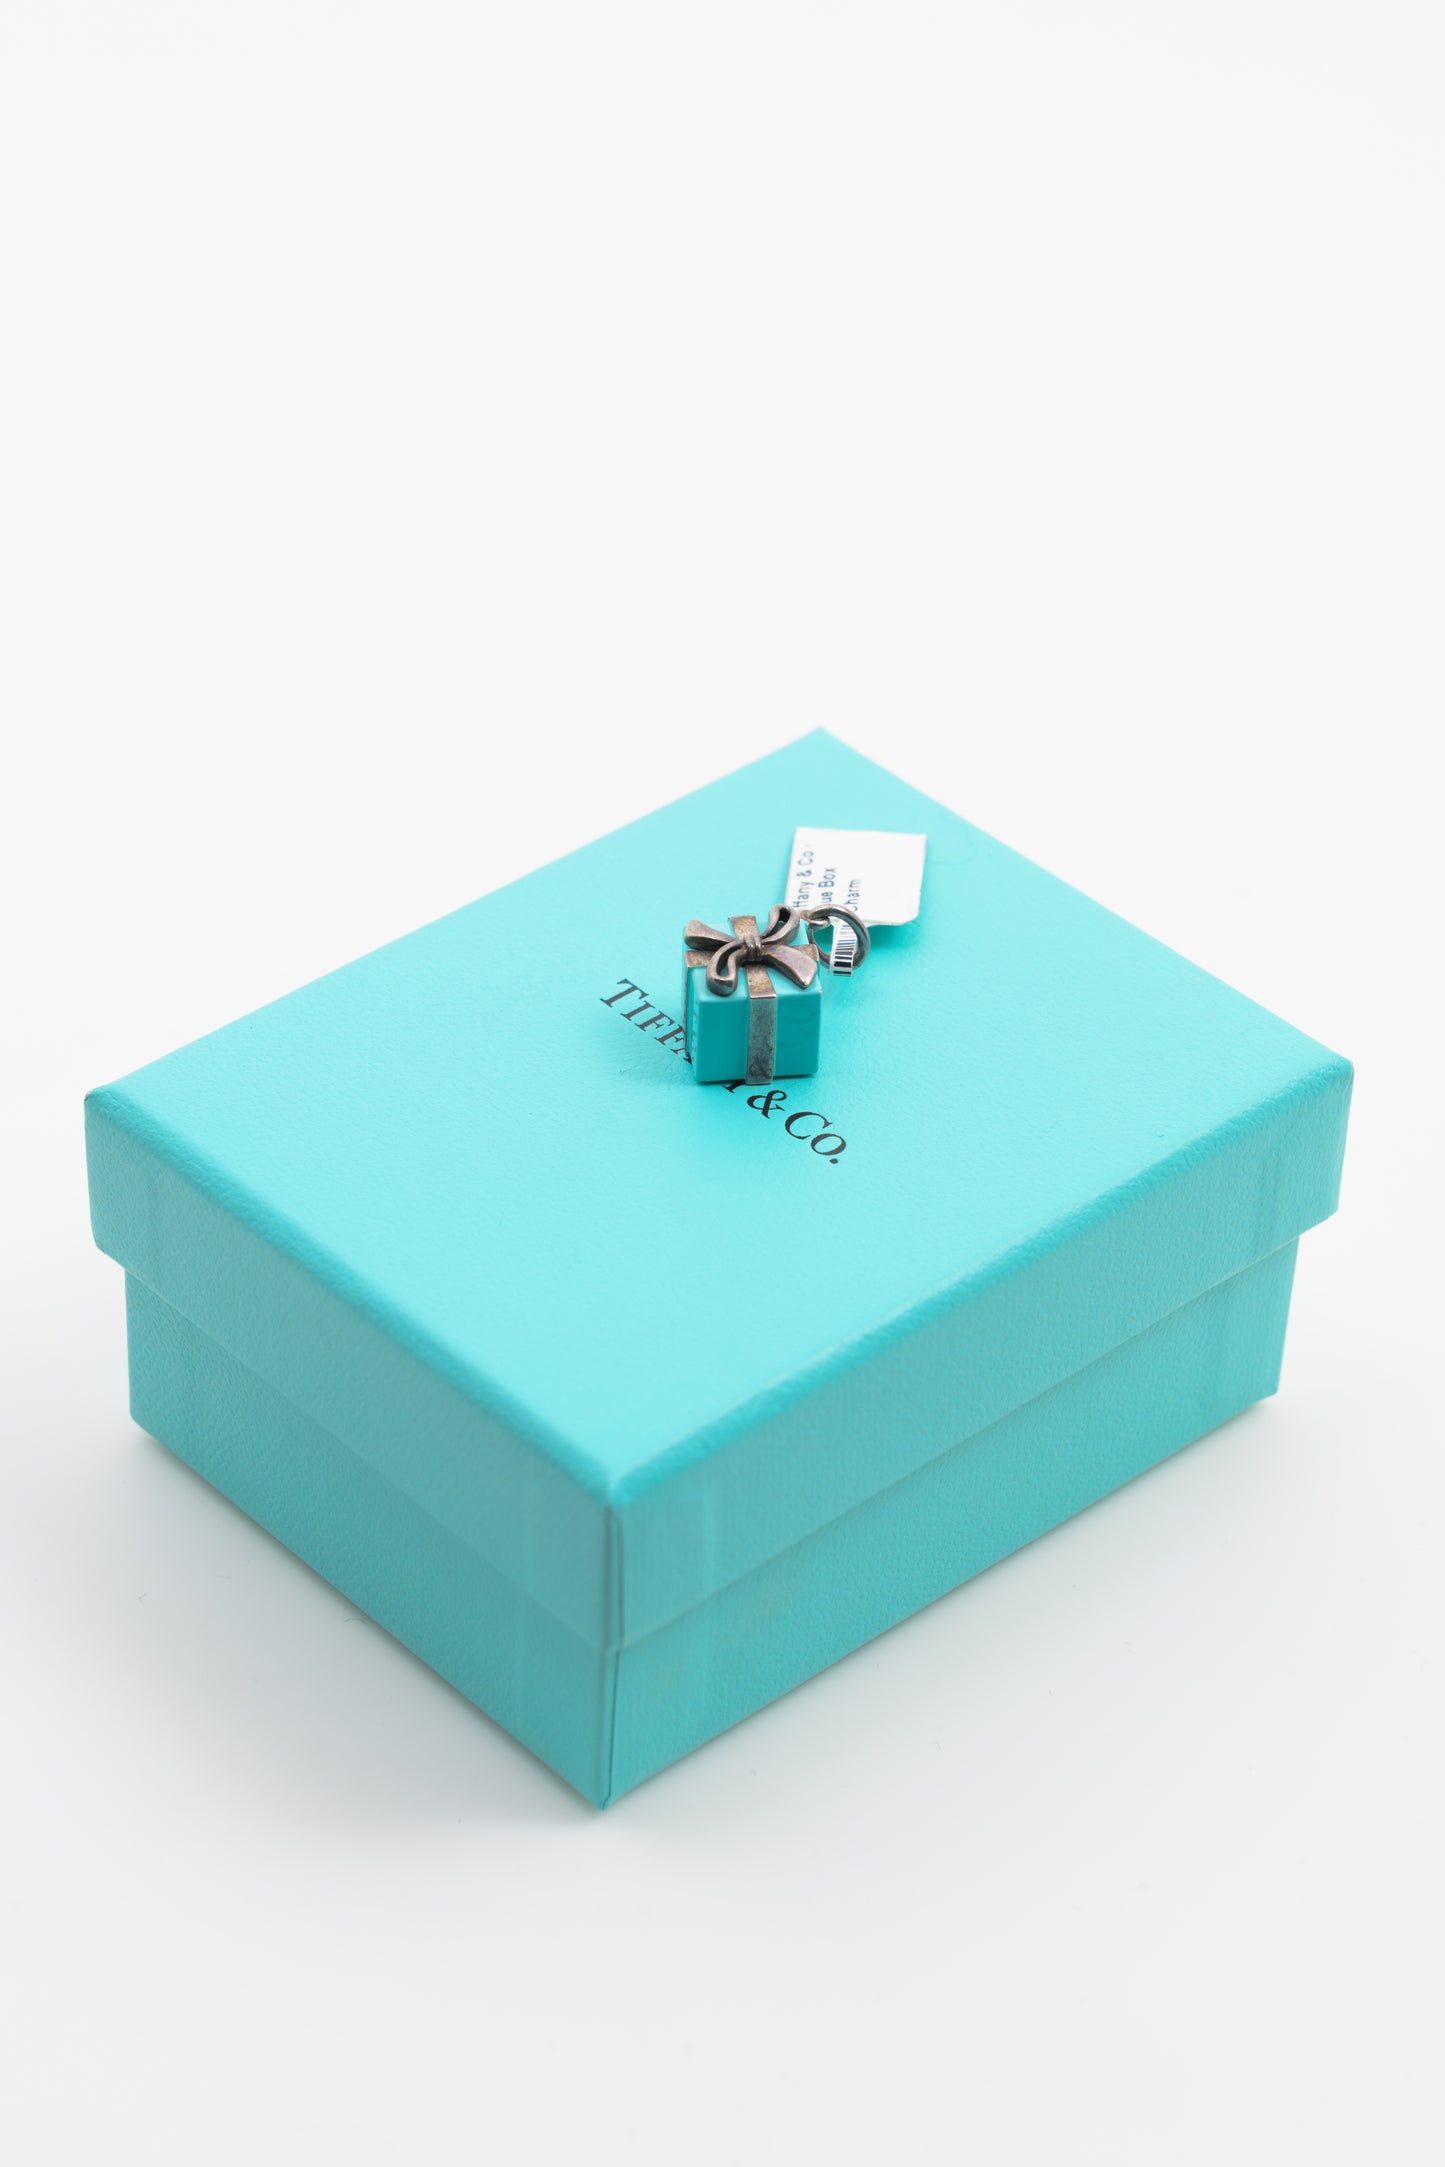 Tiffany & Co Blue Box